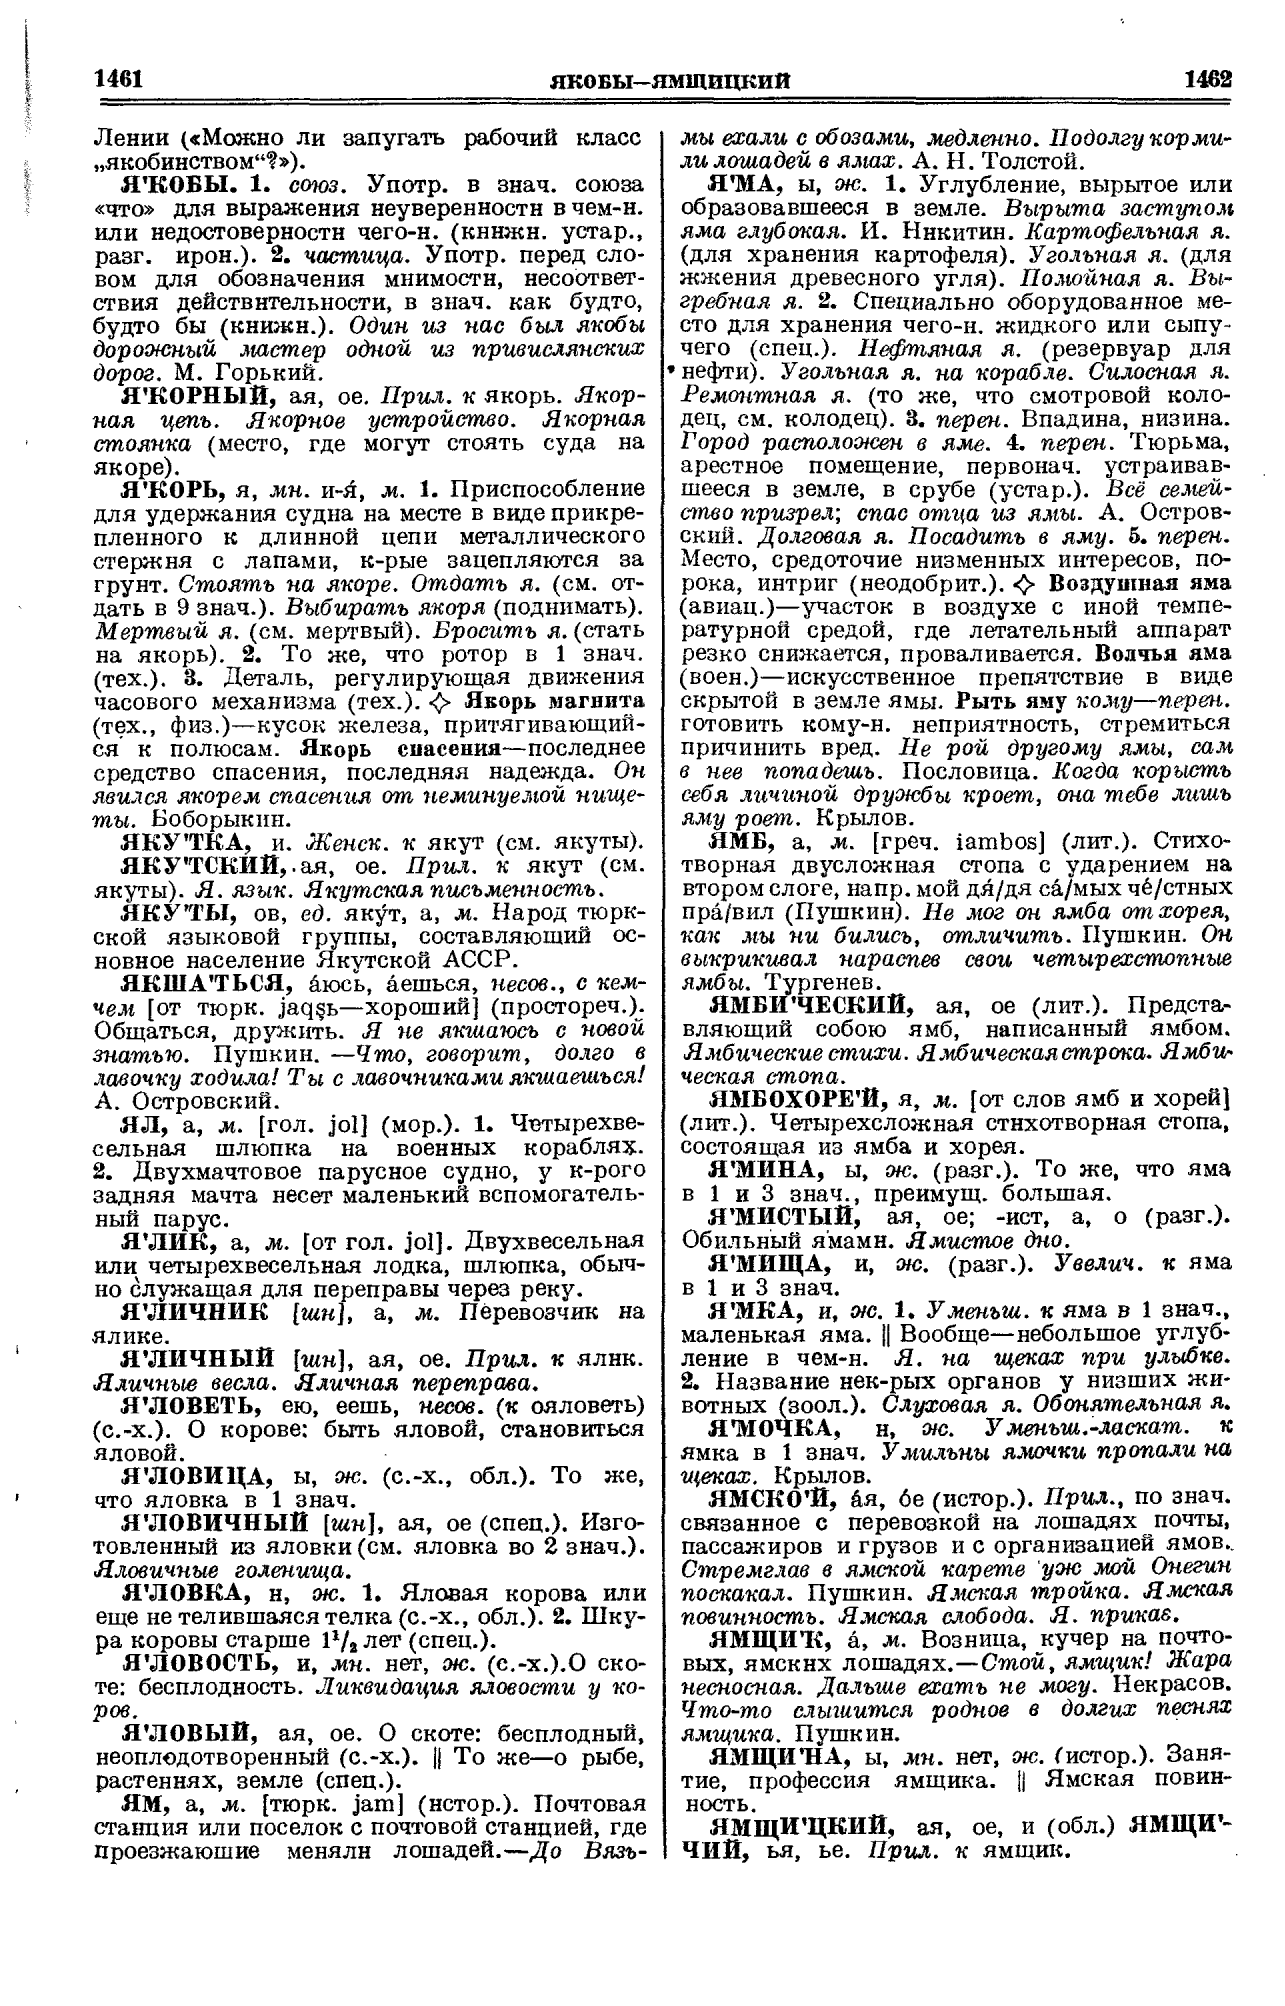 Фотокопия pdf / скан страницы 731 толкового словаря Ушакова (том 1)